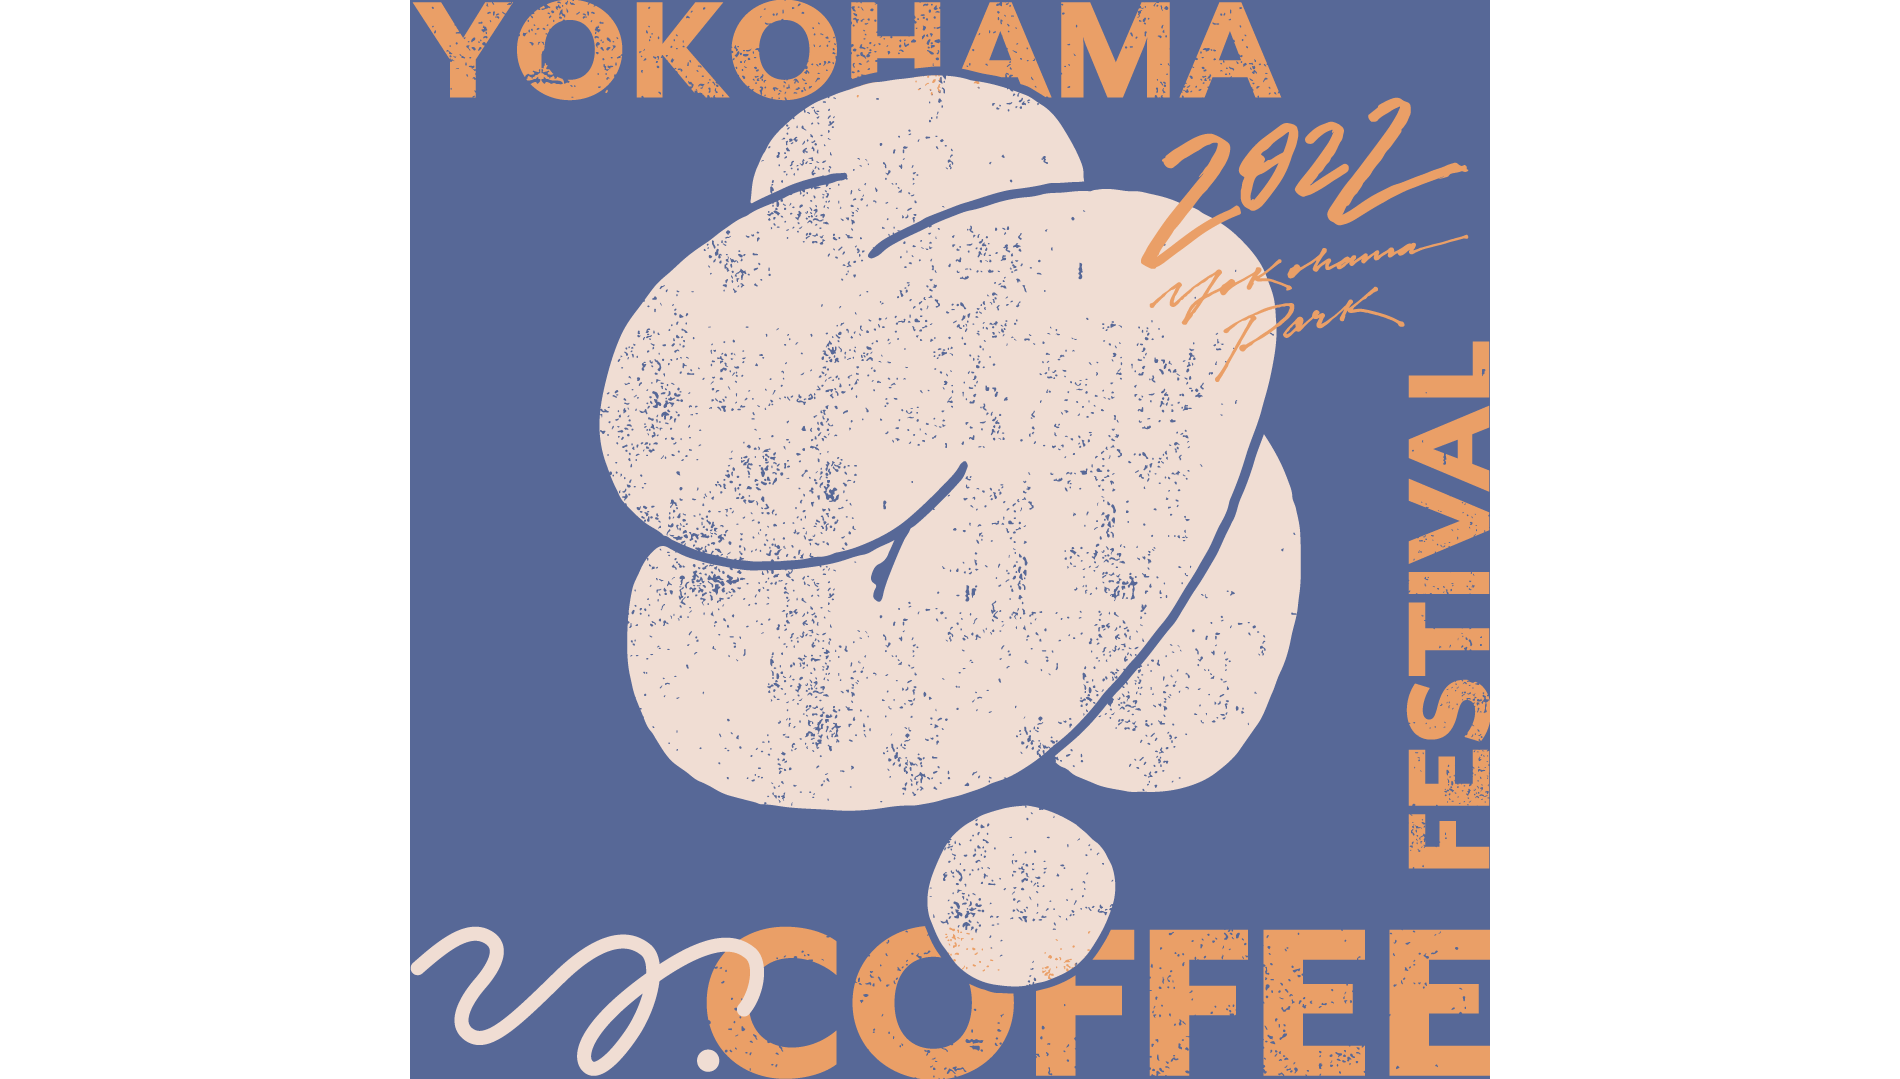 YOKOHAMA COFFEE FESTIVAL1